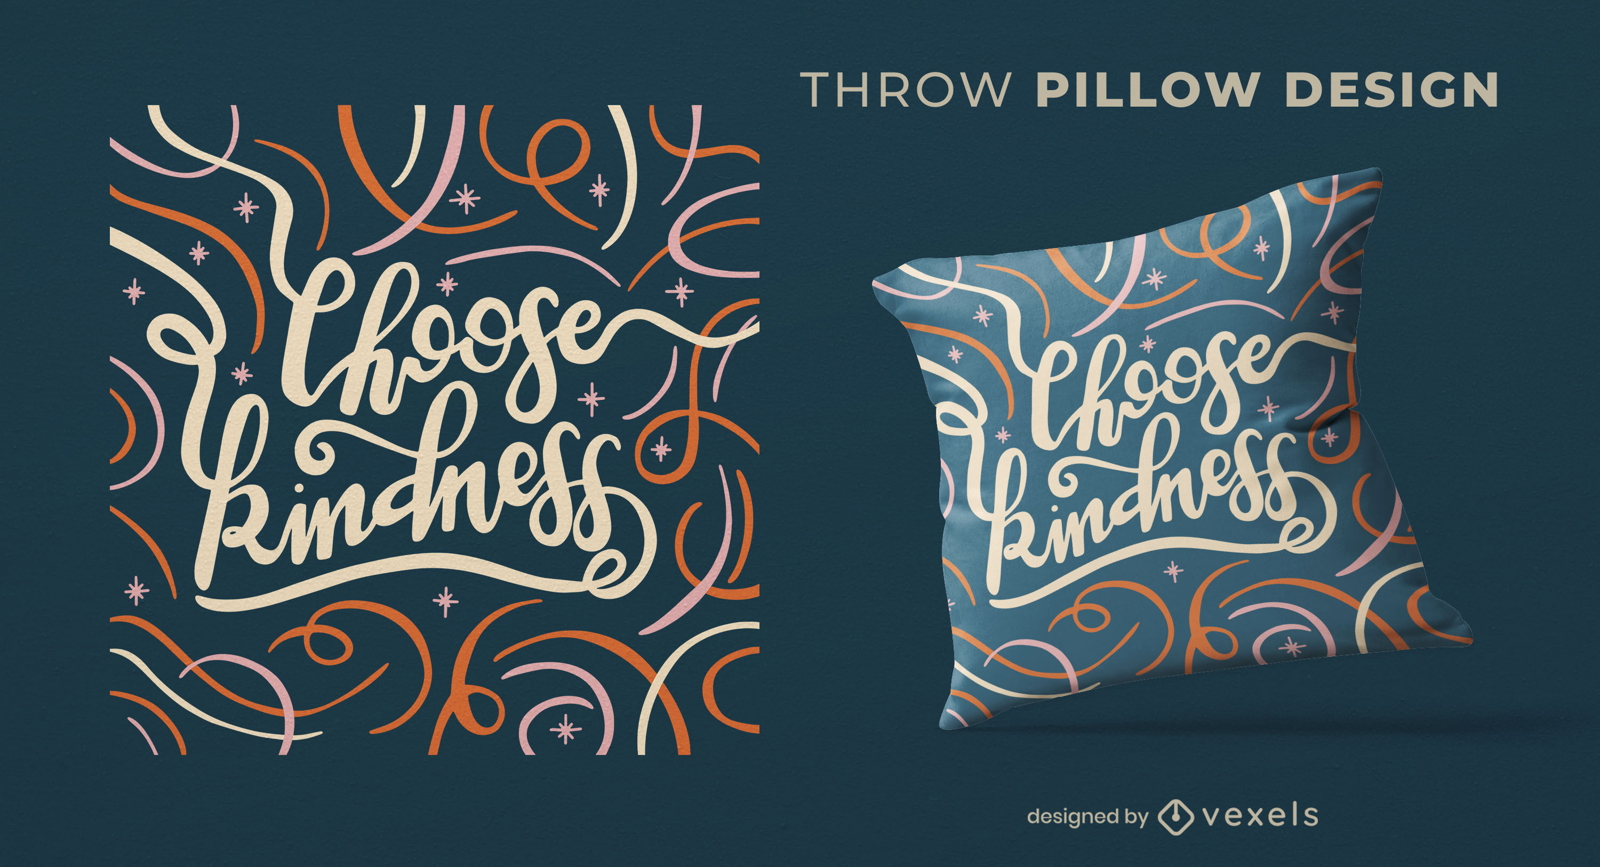 Elija el diseño de la almohada de tiro de cita de amabilidad